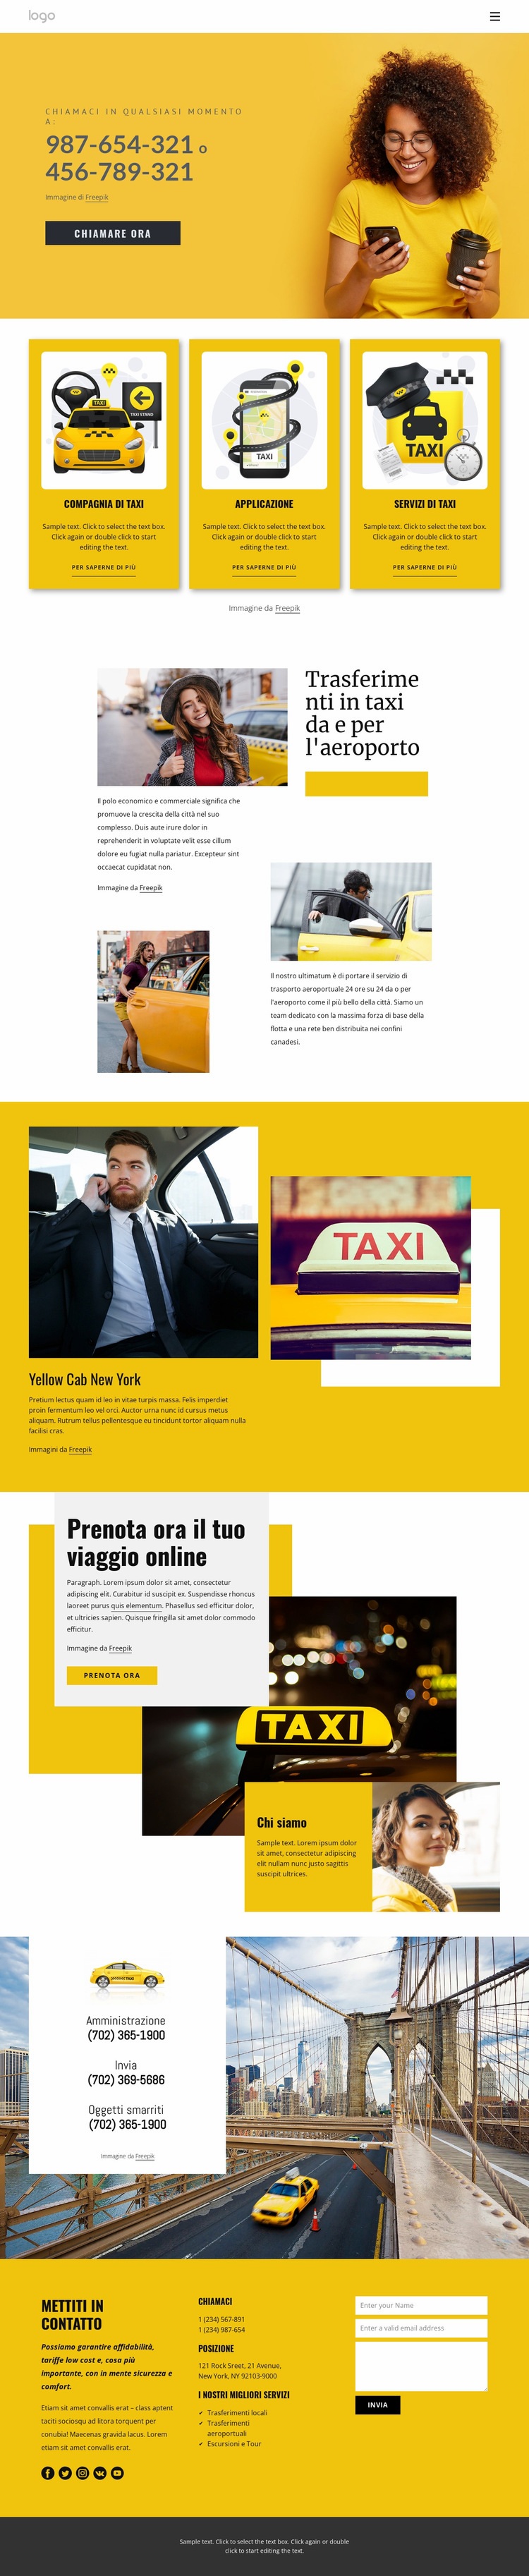 Servizio taxi di qualità Modelli di Website Builder